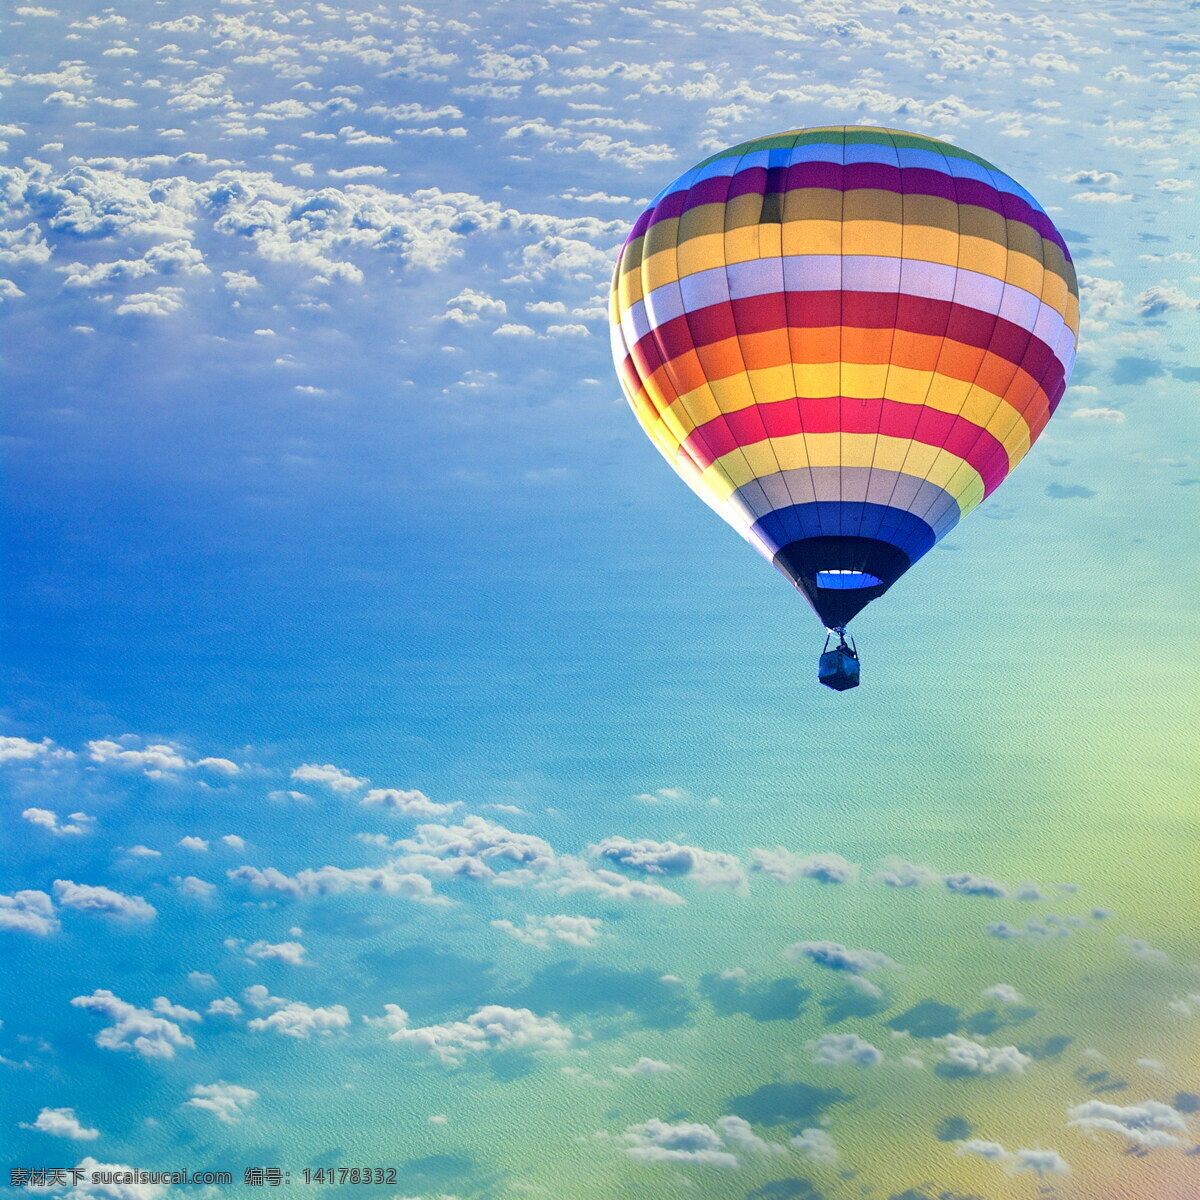 蓝天 里 热 汽 球 天空 白云 热汽球 飞翔 其他类别 生活百科